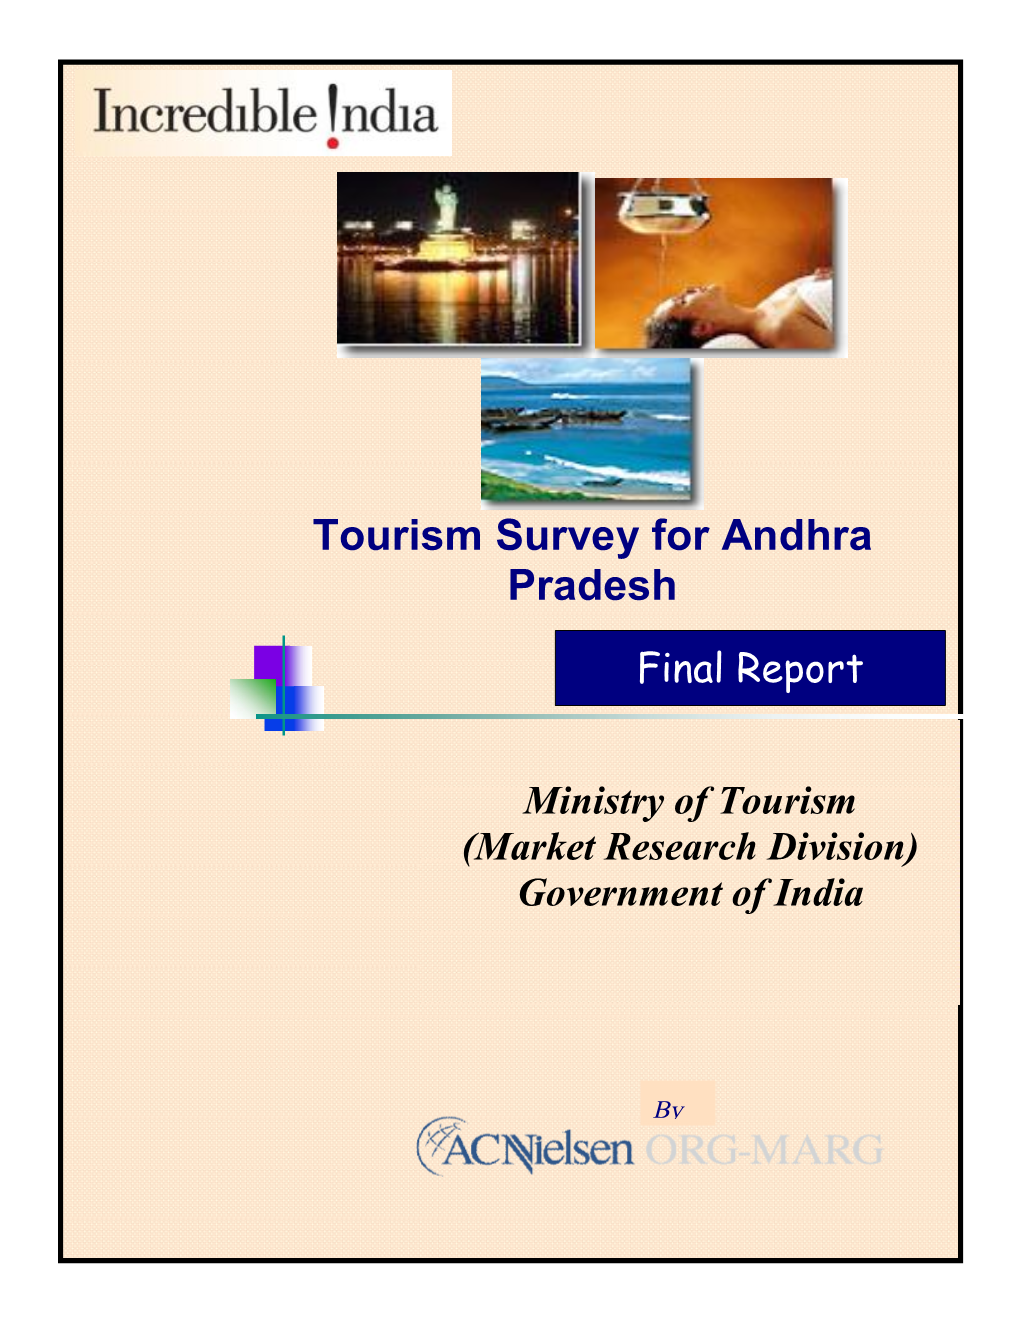 Tourism Survey for Andhra Pradesh